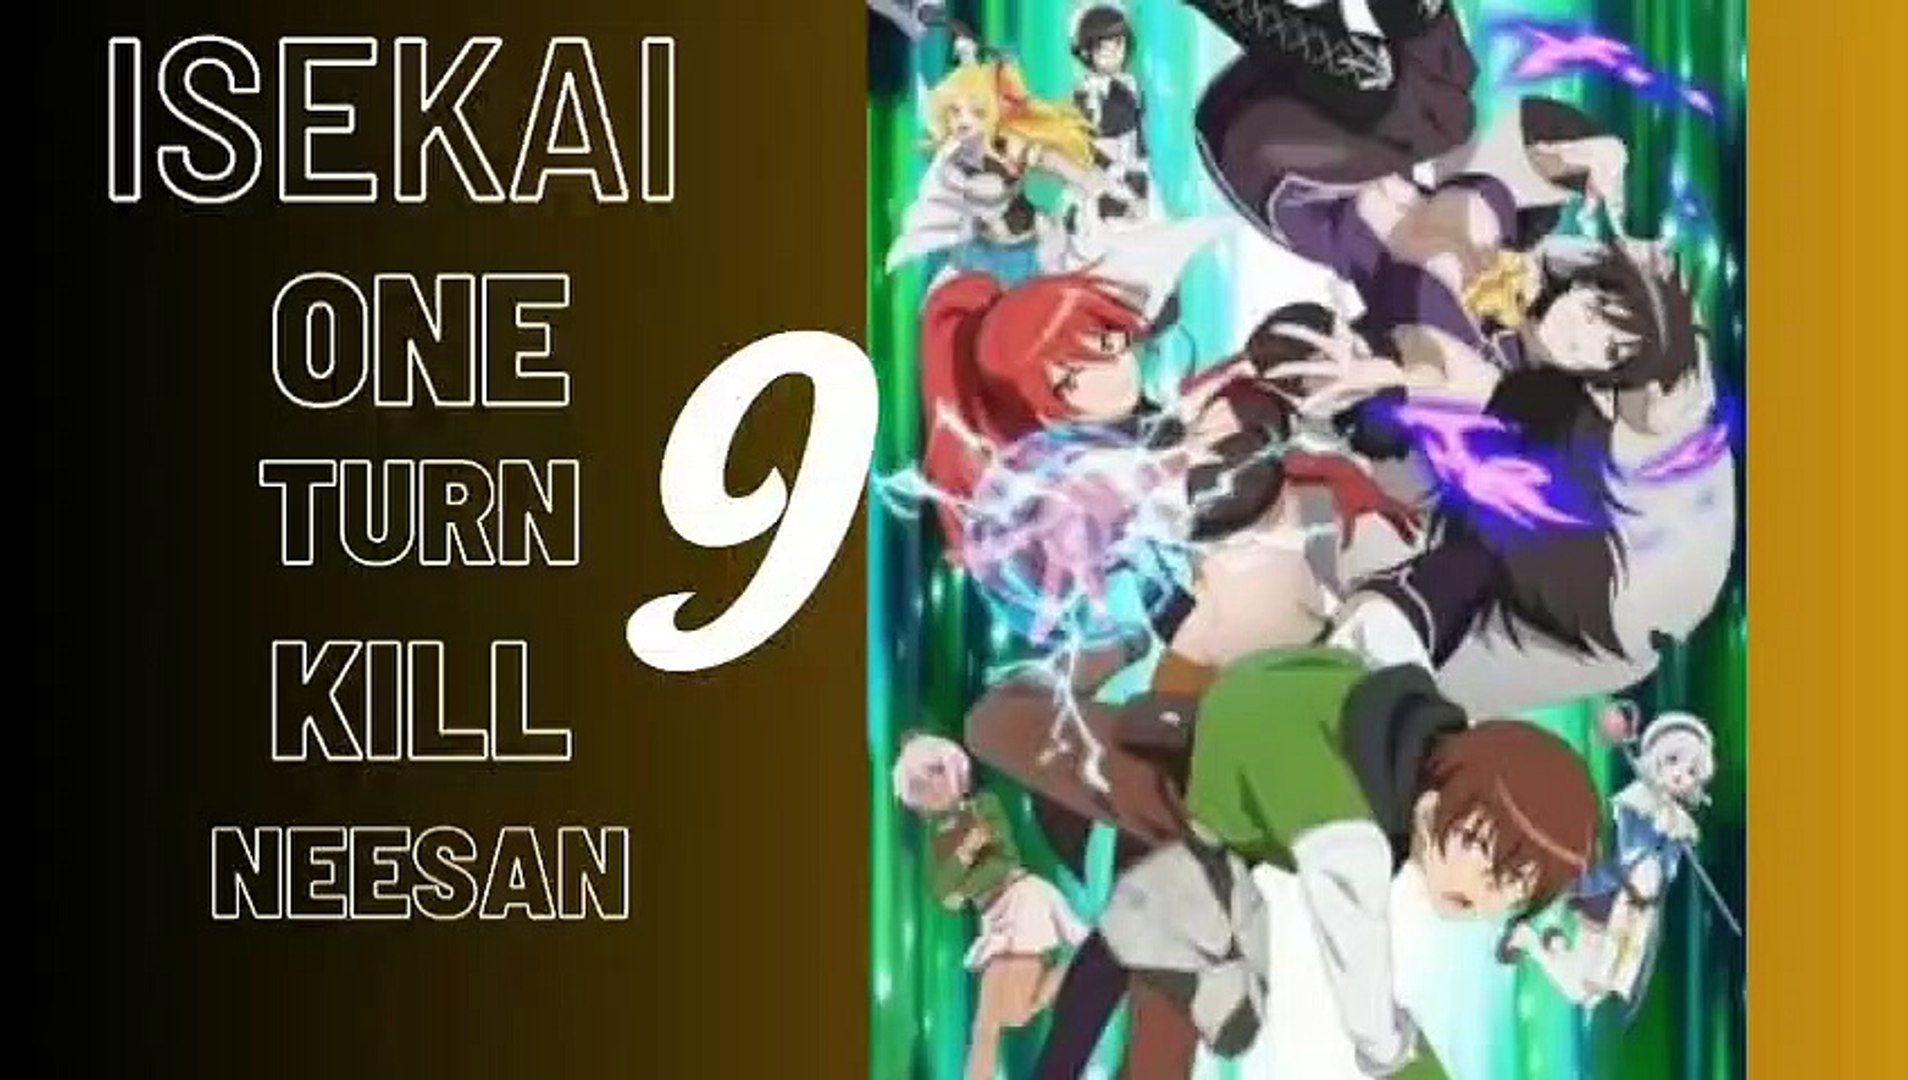 Isekai One Turn Kill Neesan: Ane Douhan no Isekai Seikatsu